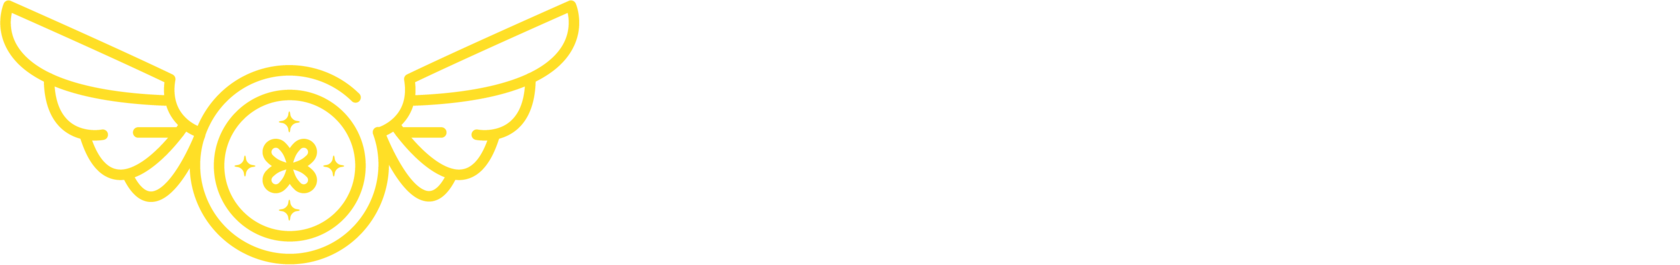 Payfyty